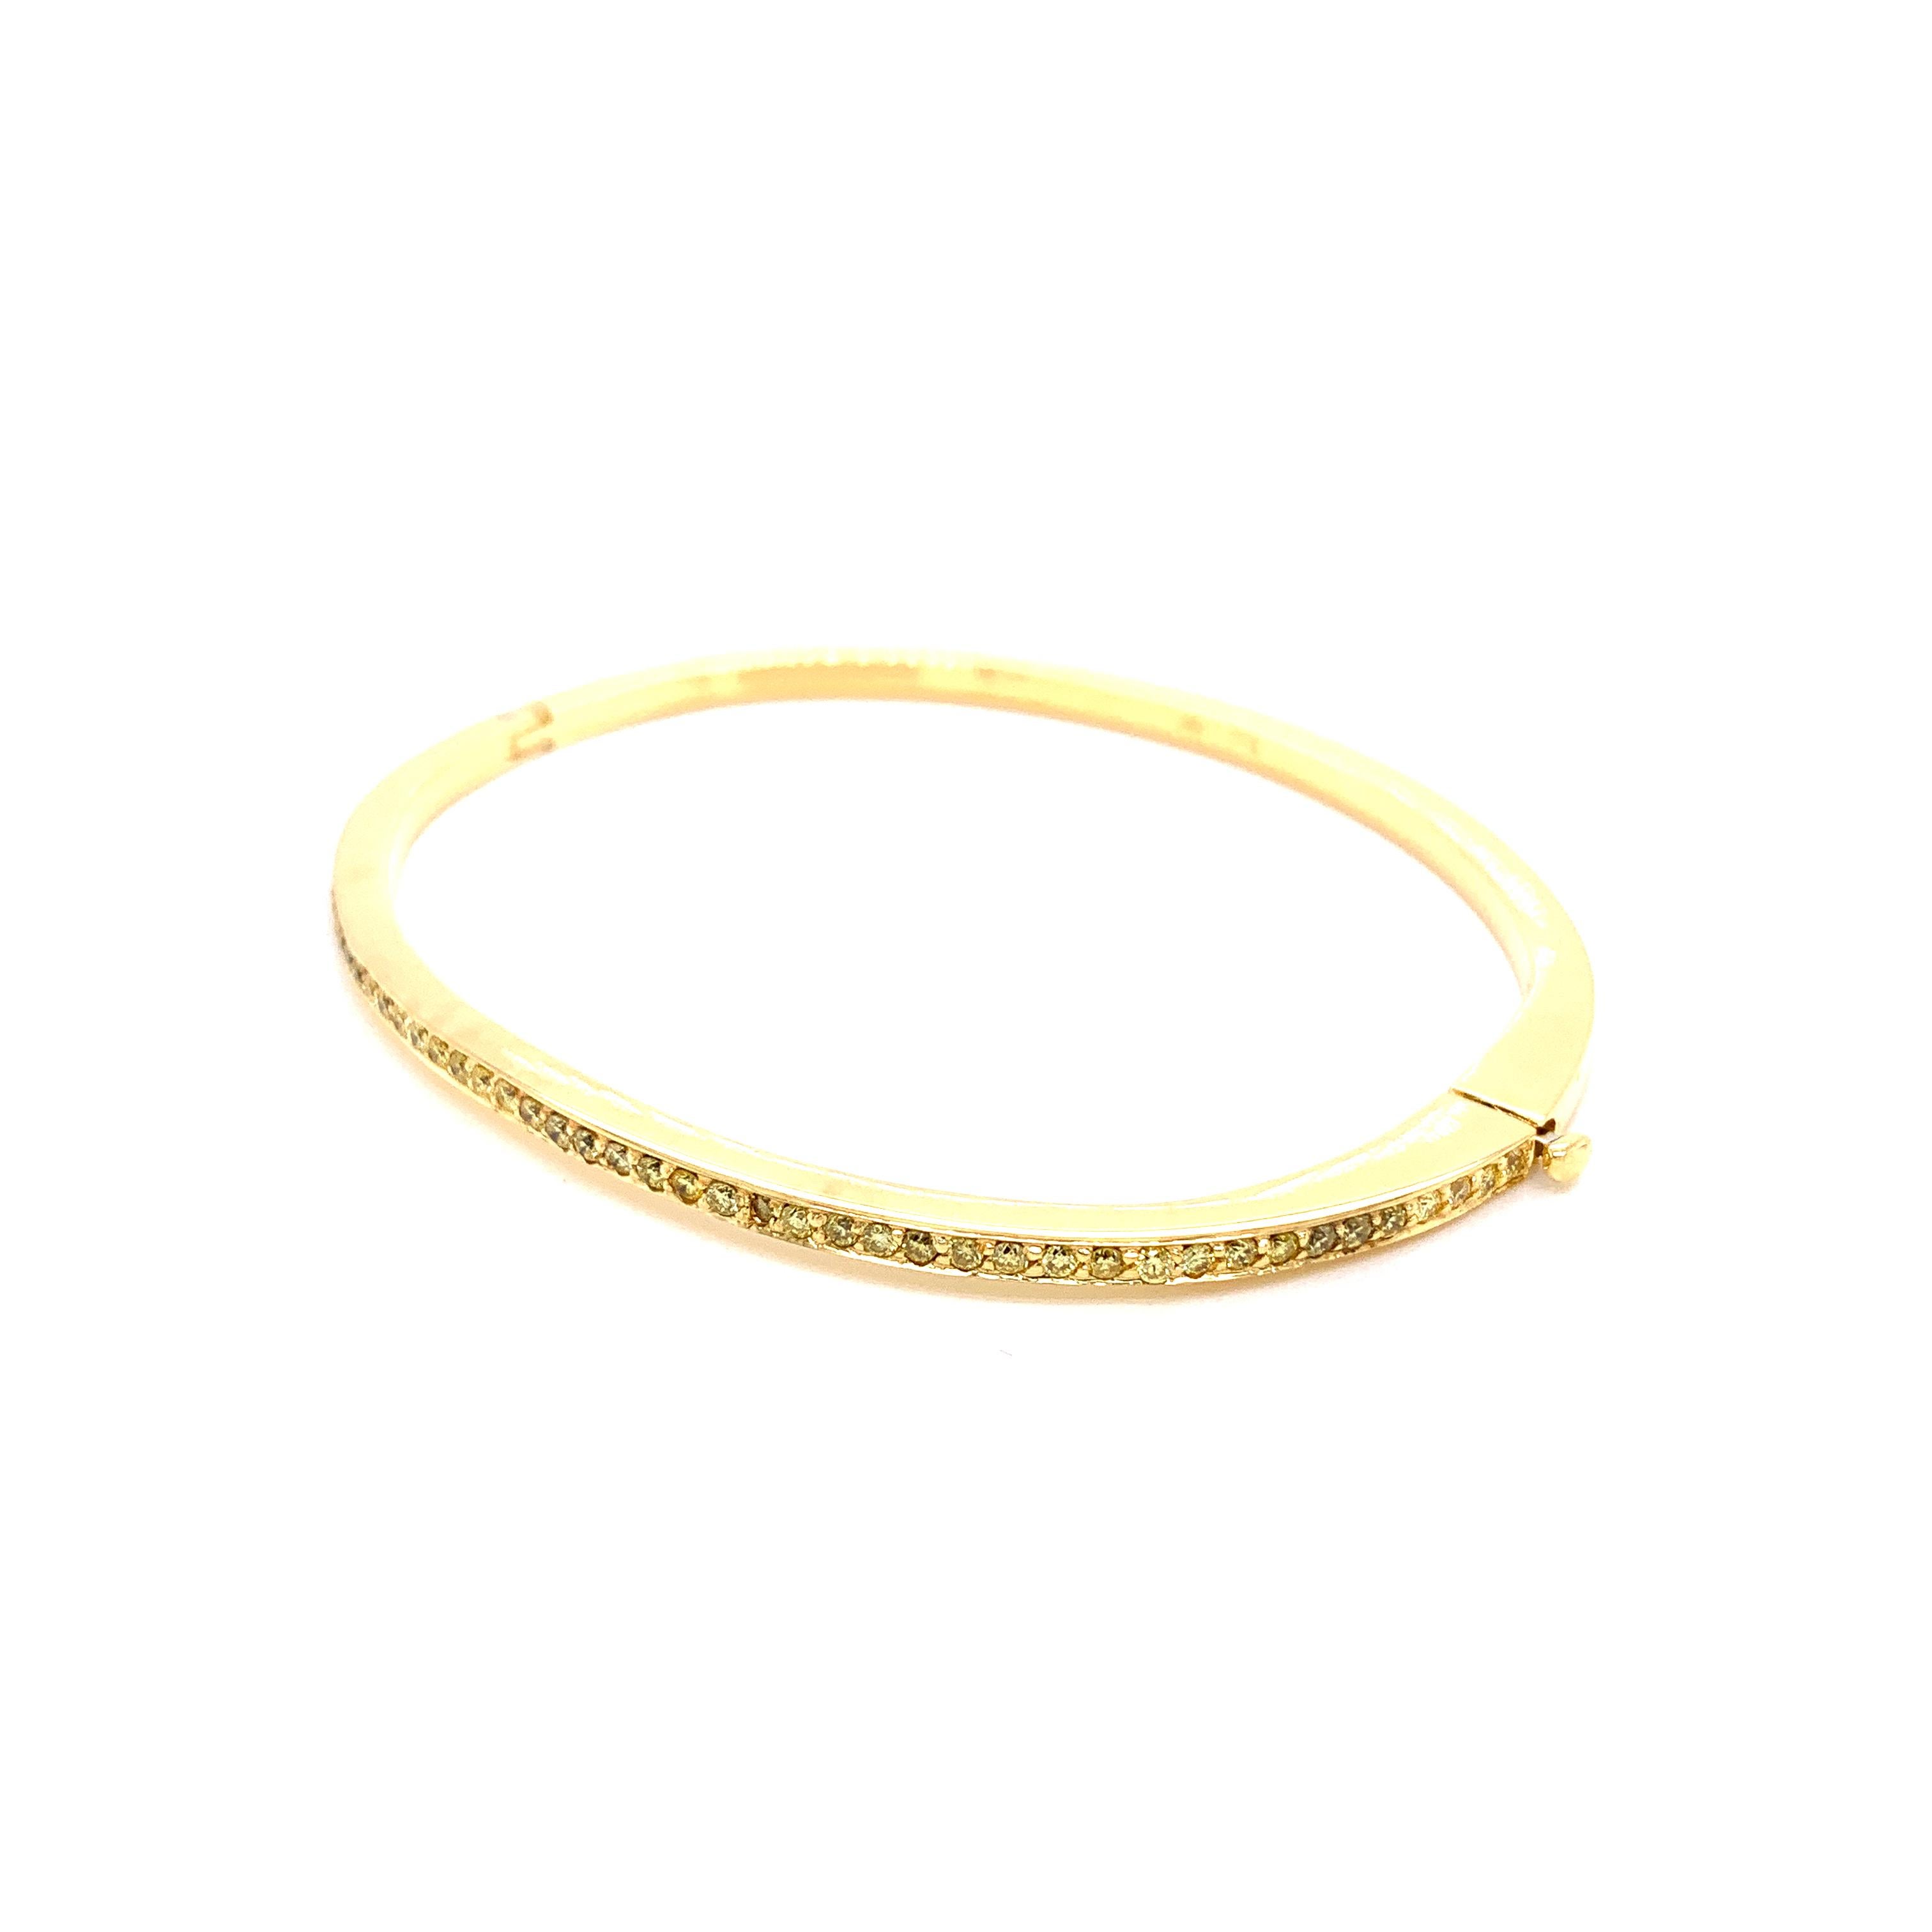 Bracelet en or jaune 18 carats et diamants ronds d'un jaune intense :

Ce bracelet élégant est orné de magnifiques diamants ronds de couleur jaune intense pesant 0,80 carat. Les diamants sont d'une qualité et d'une clarté exceptionnelles, avec une